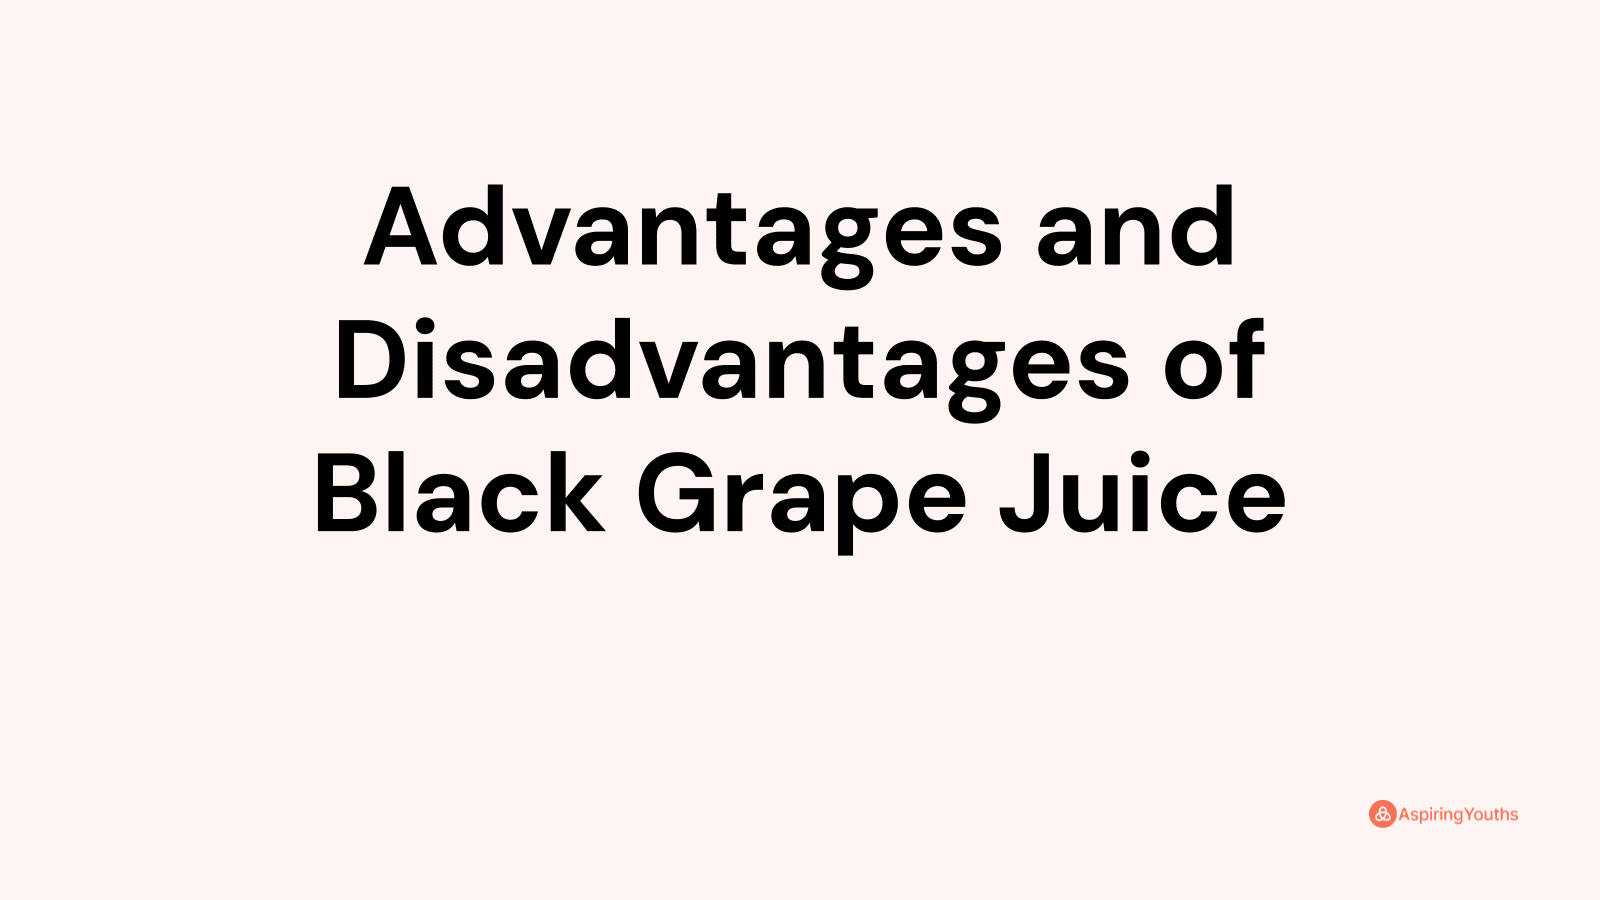 Advantages and disadvantages of Black Grape Juice